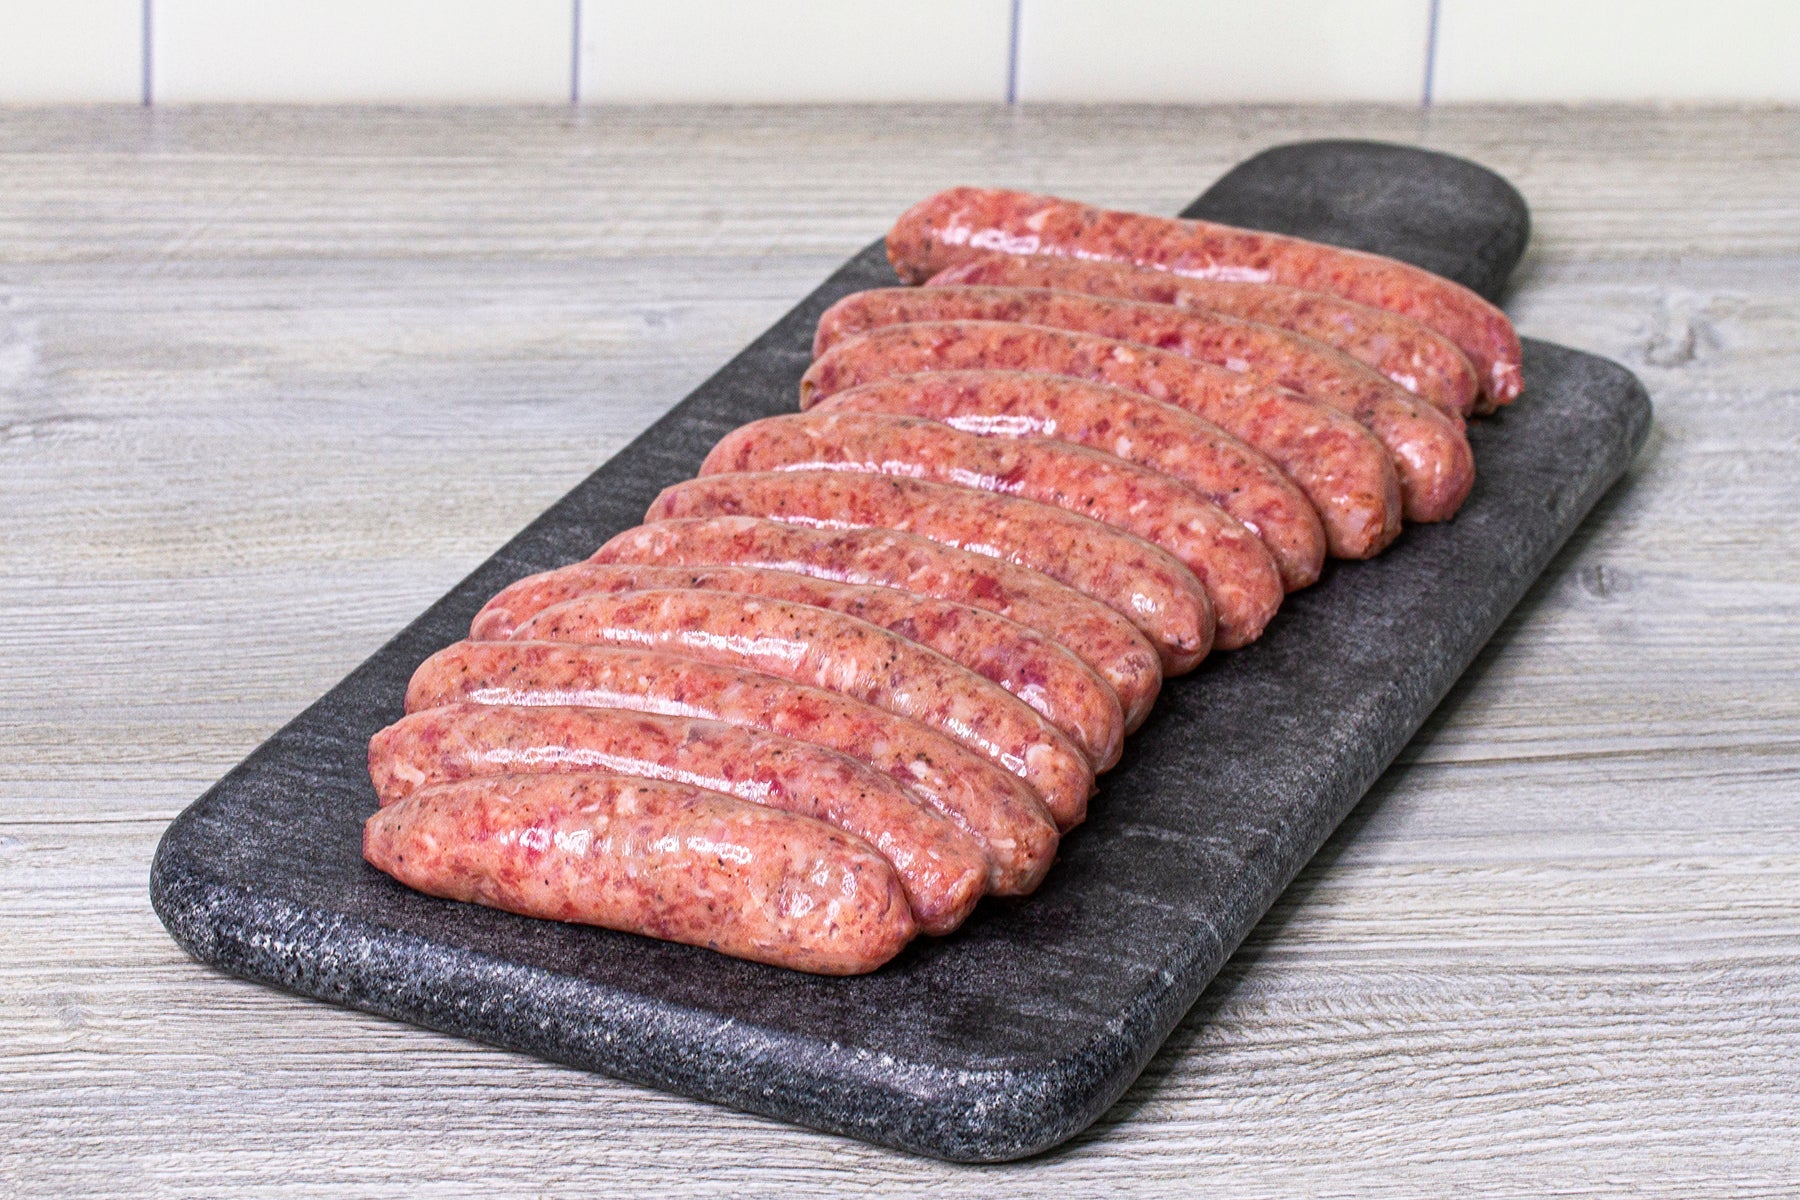 Beef Bangers (Approximately 1 pound) - Ackroyd's Scottish Bakery